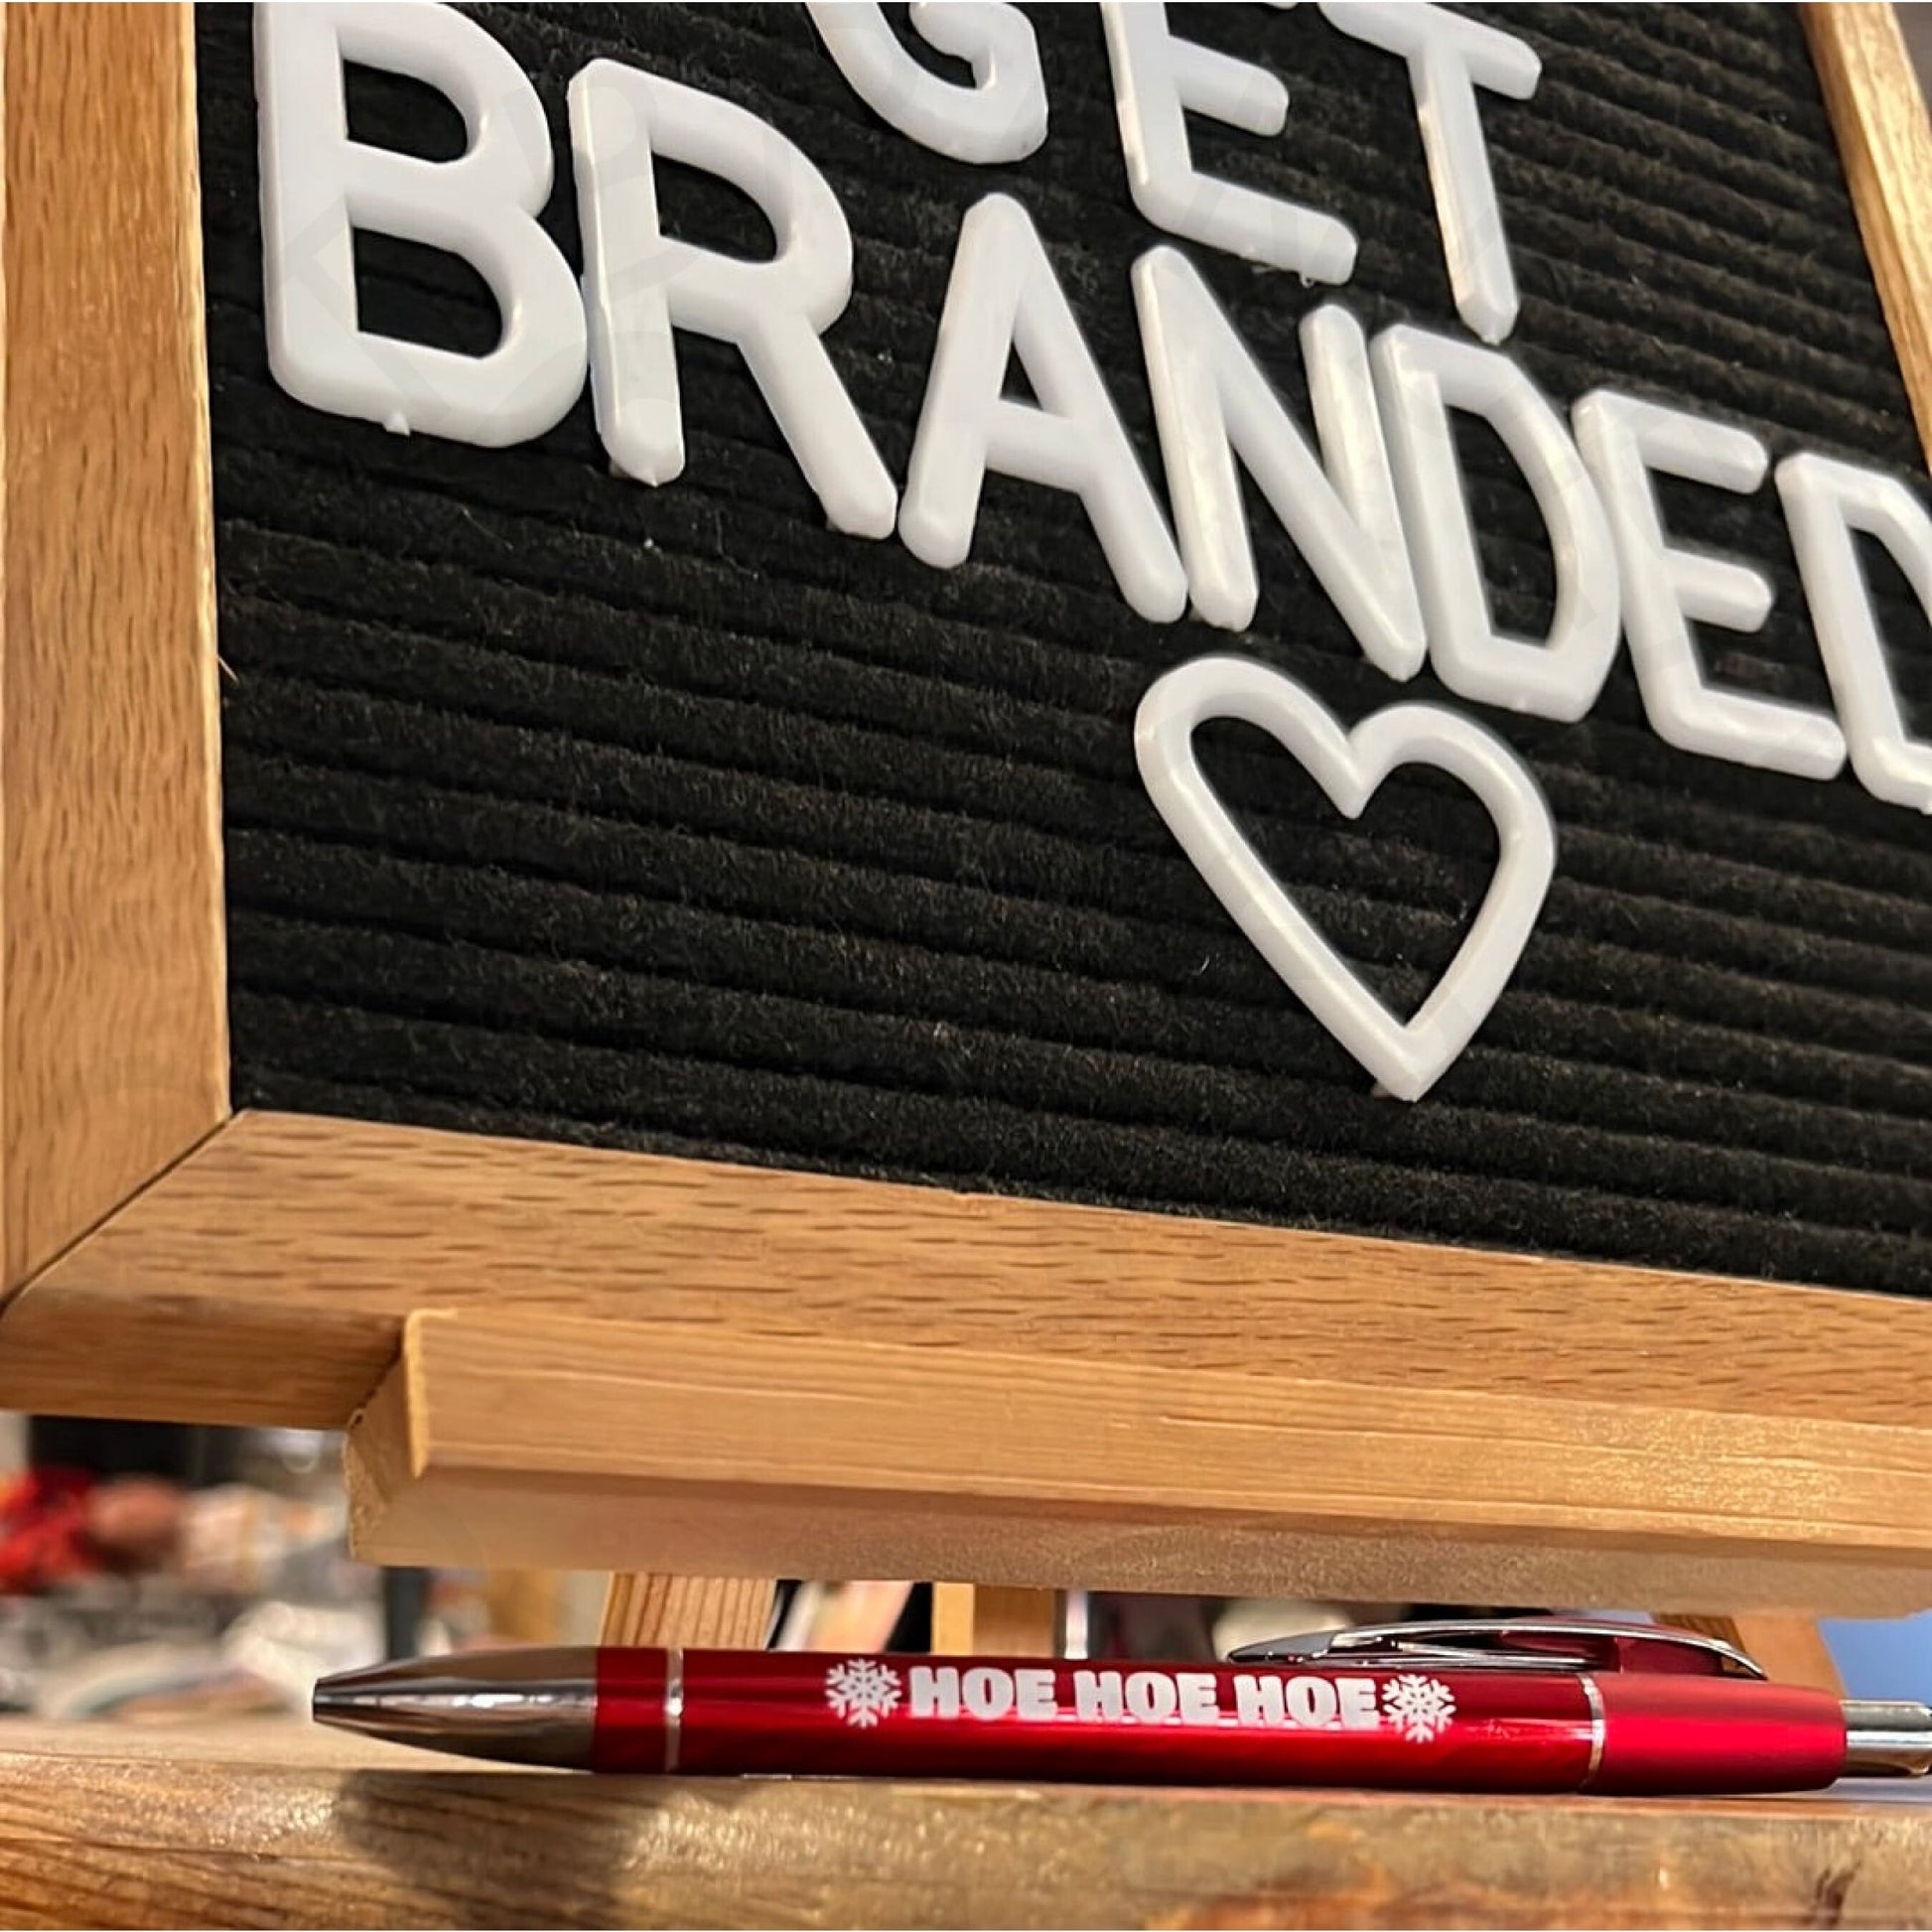 Get Branded Custom Tees - Sarcastic Pens